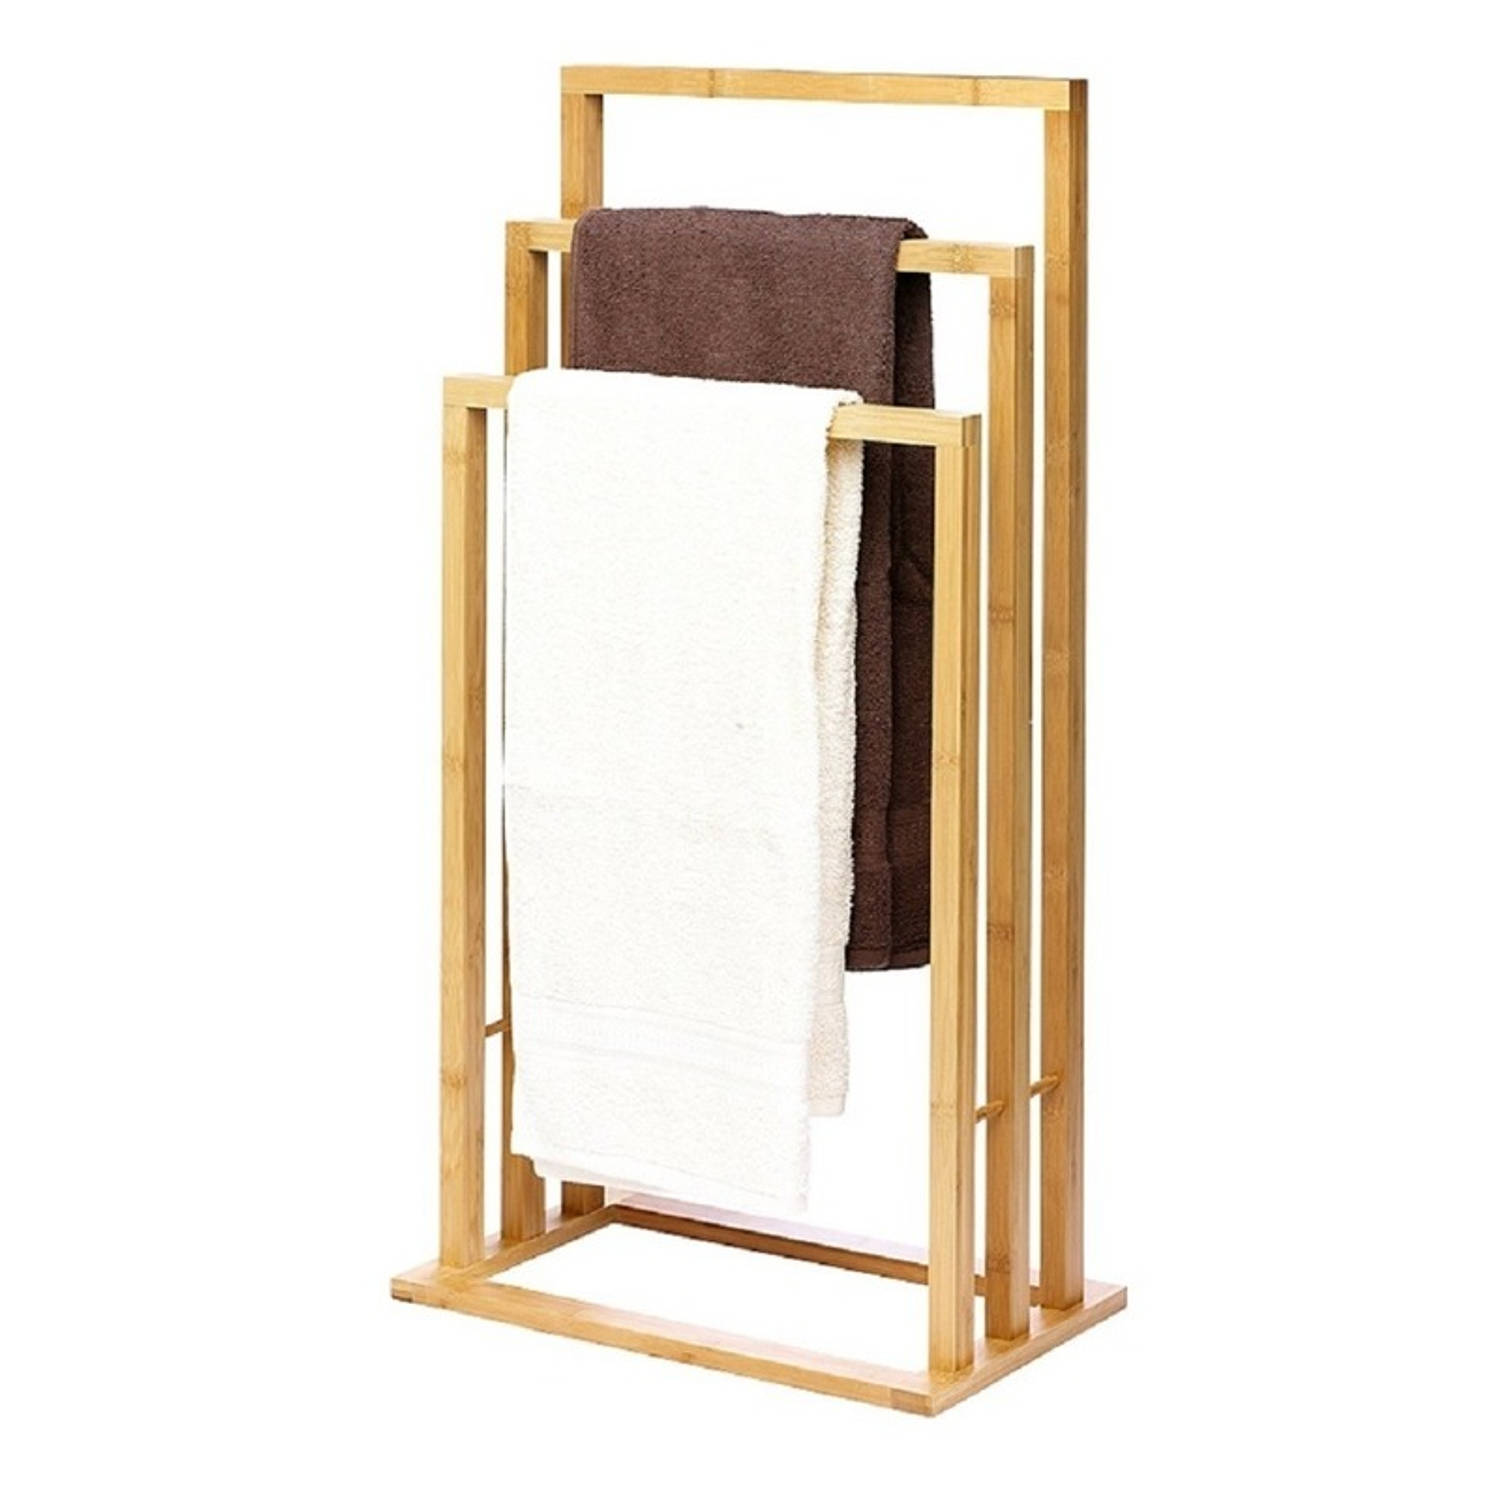 Handdoek rek bamboe hout 42 x 81,5 cm Handdoek droogrekken Badlaken droogrekken Badkamer accessoires